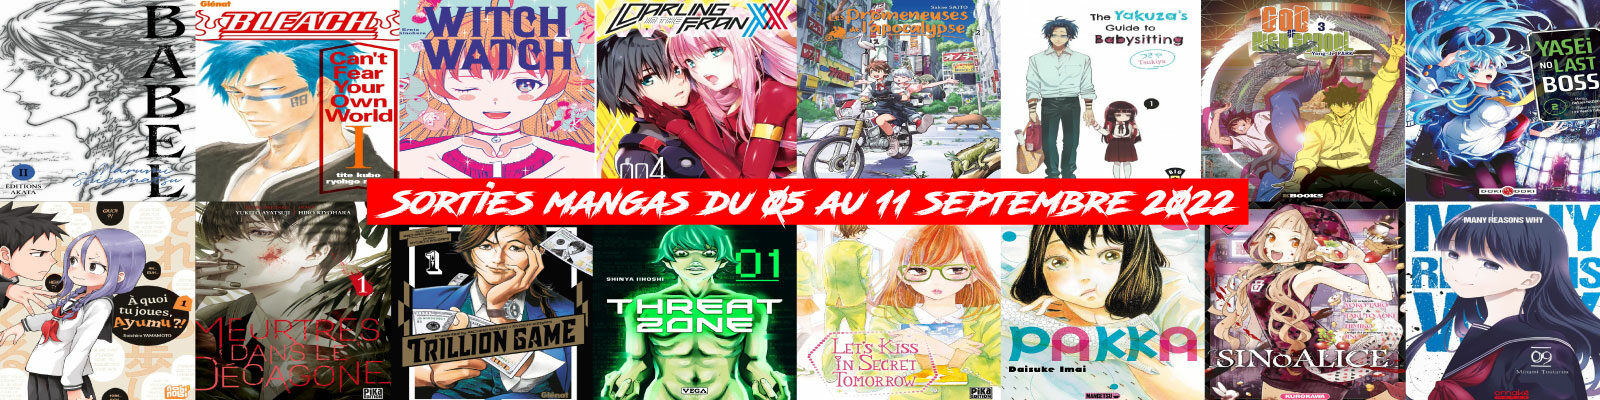 Sorties mangas-du-05-au-11-septembre-2022-2